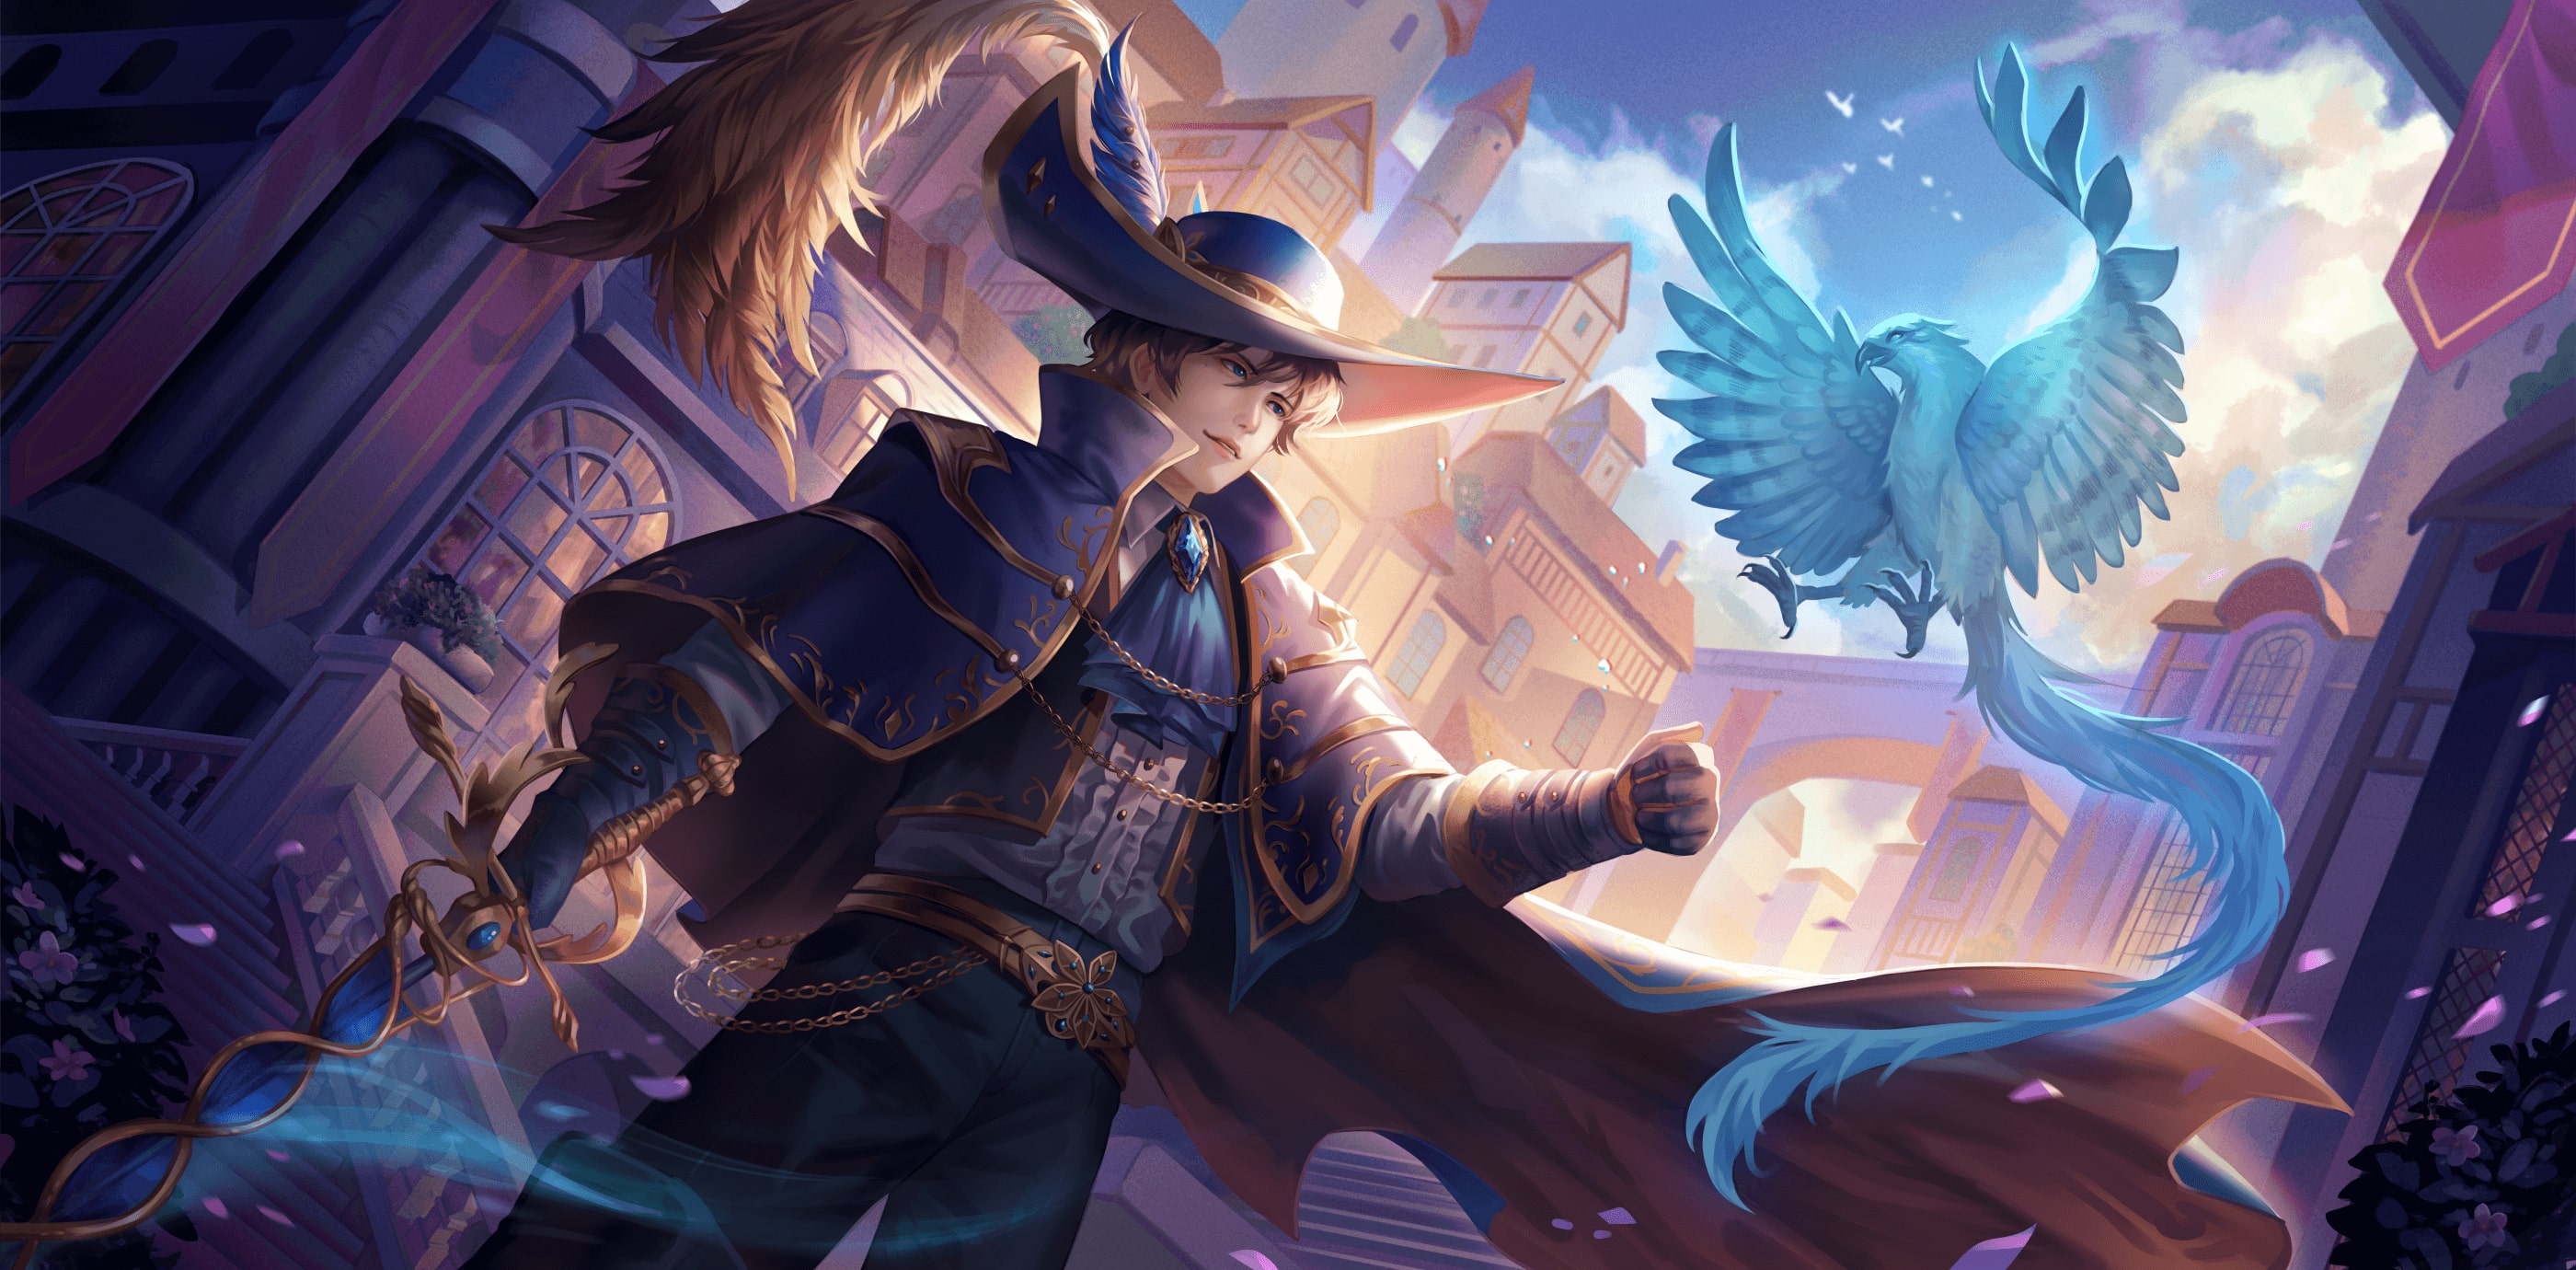 Digital artwork of a noble swordsman and a magical blue bird